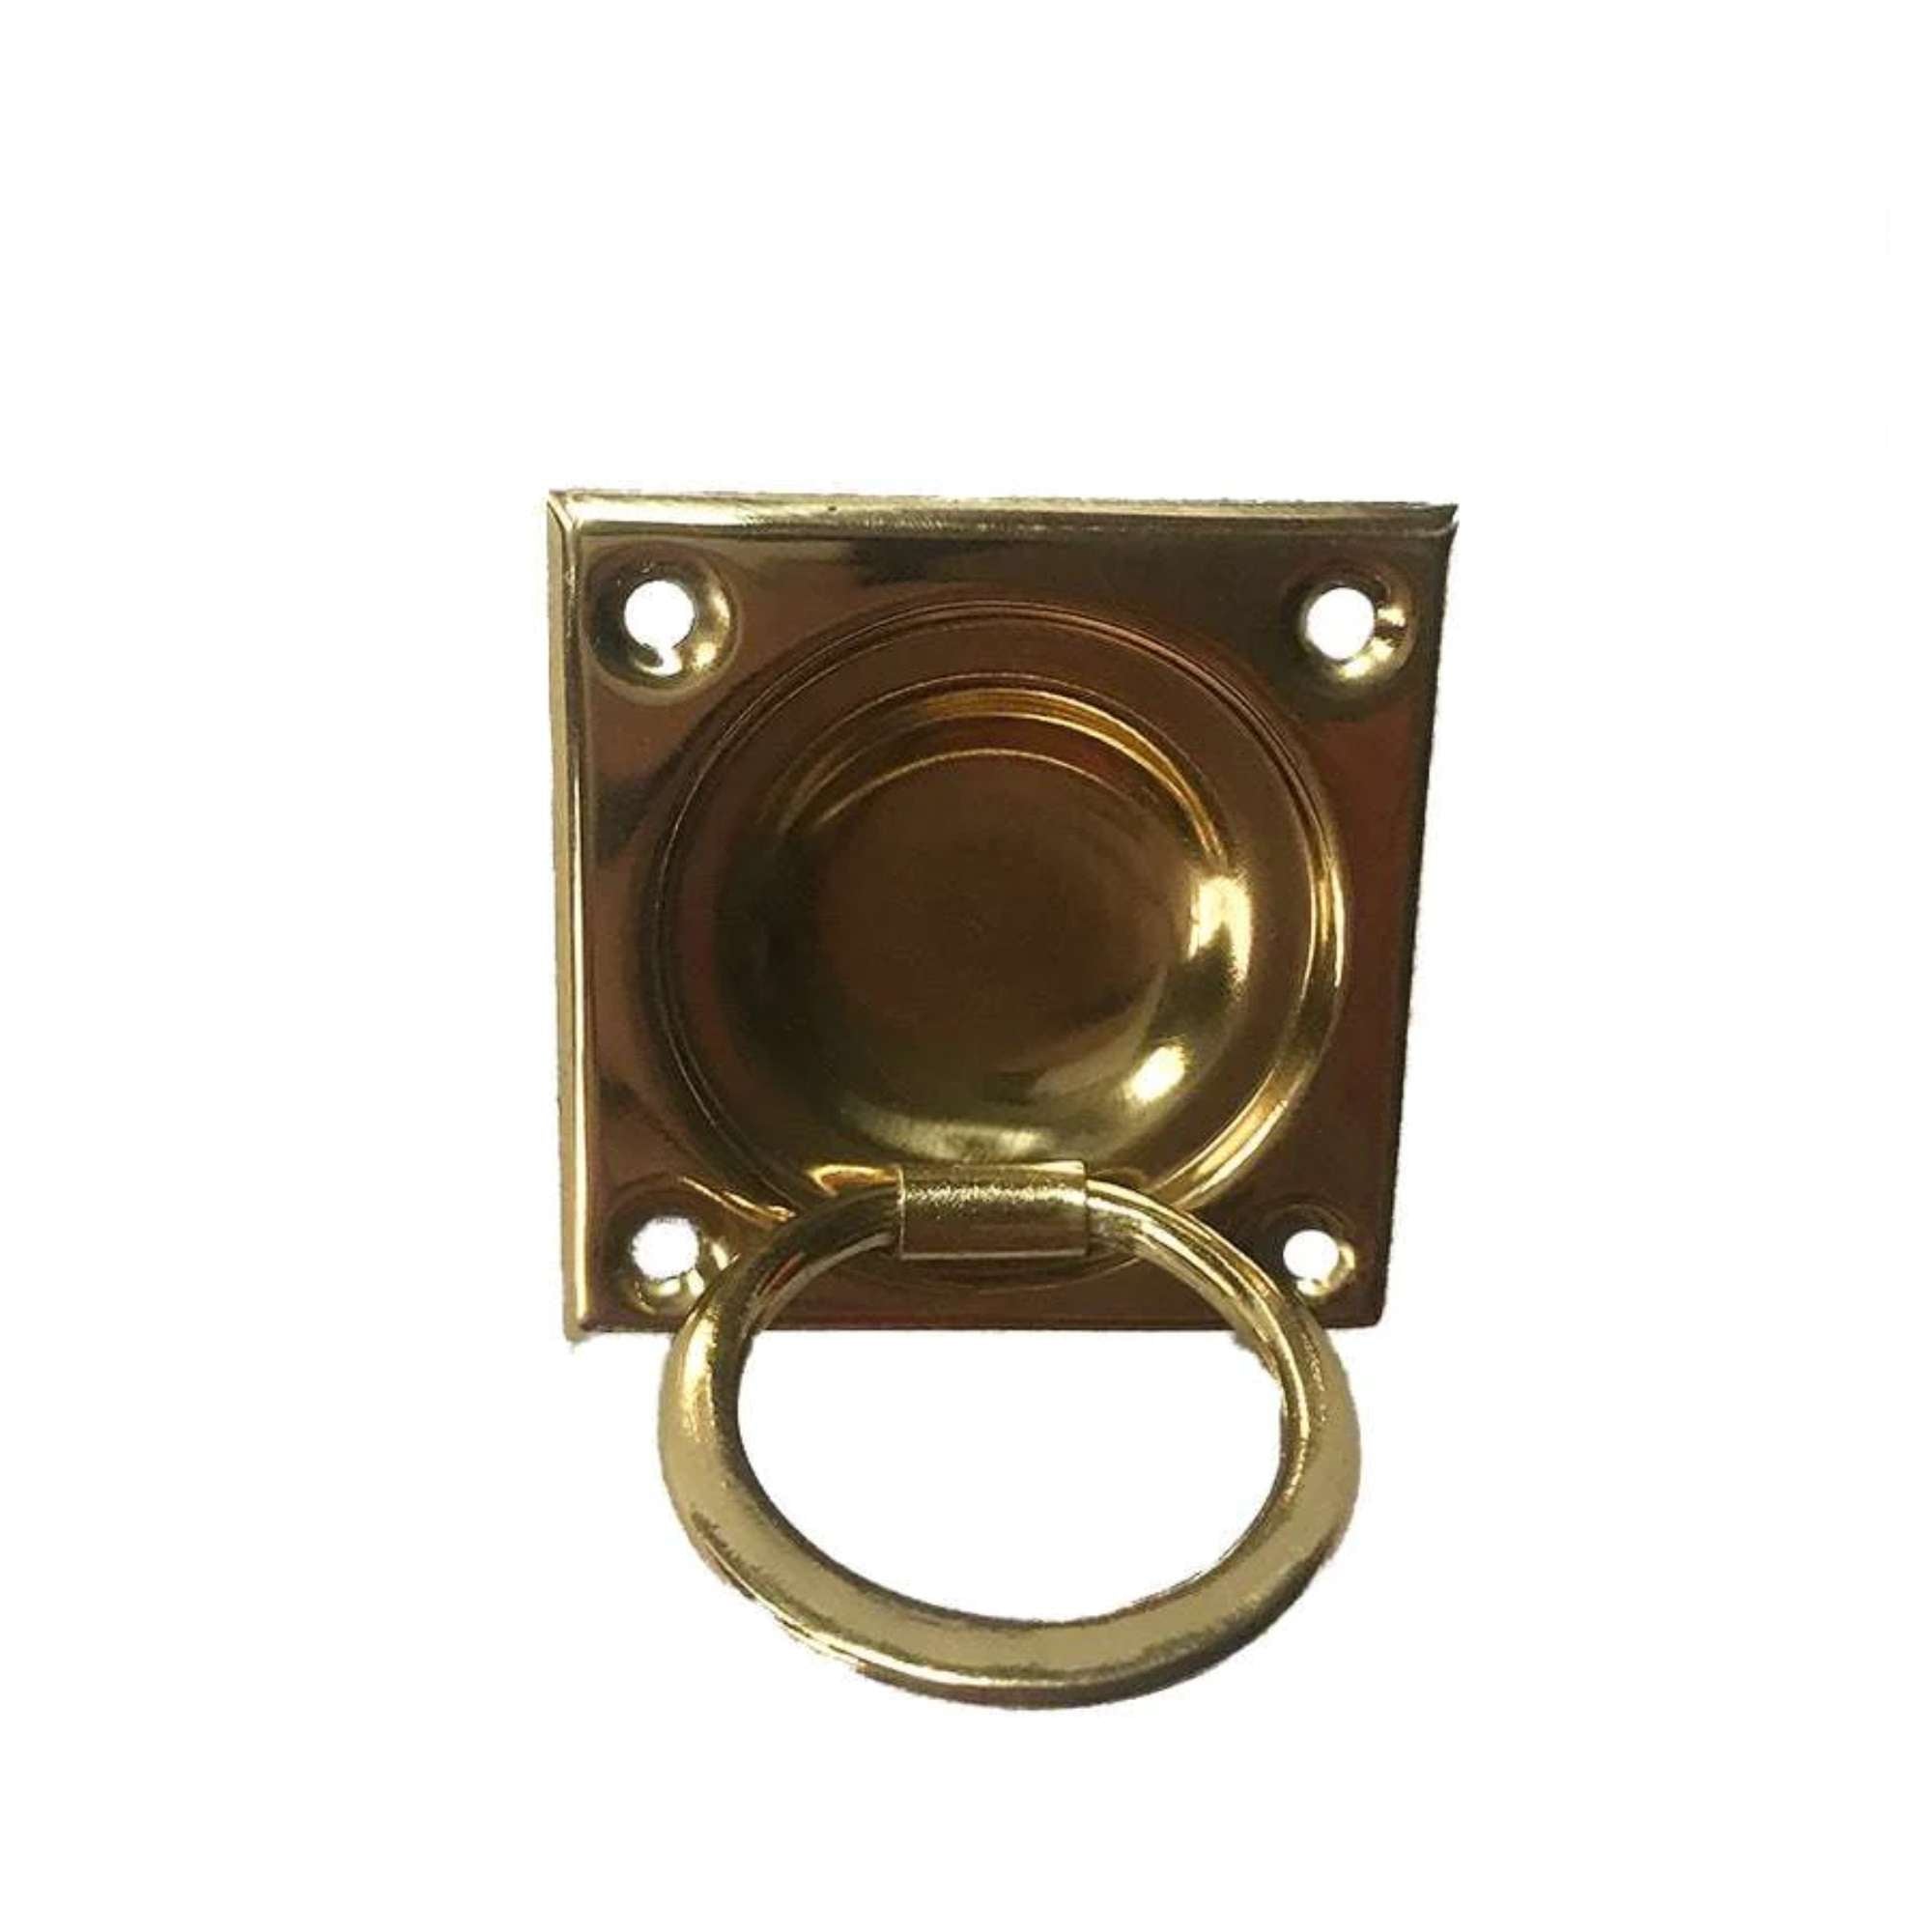 Polished brass knob zaponato - Tagliashop - 8220